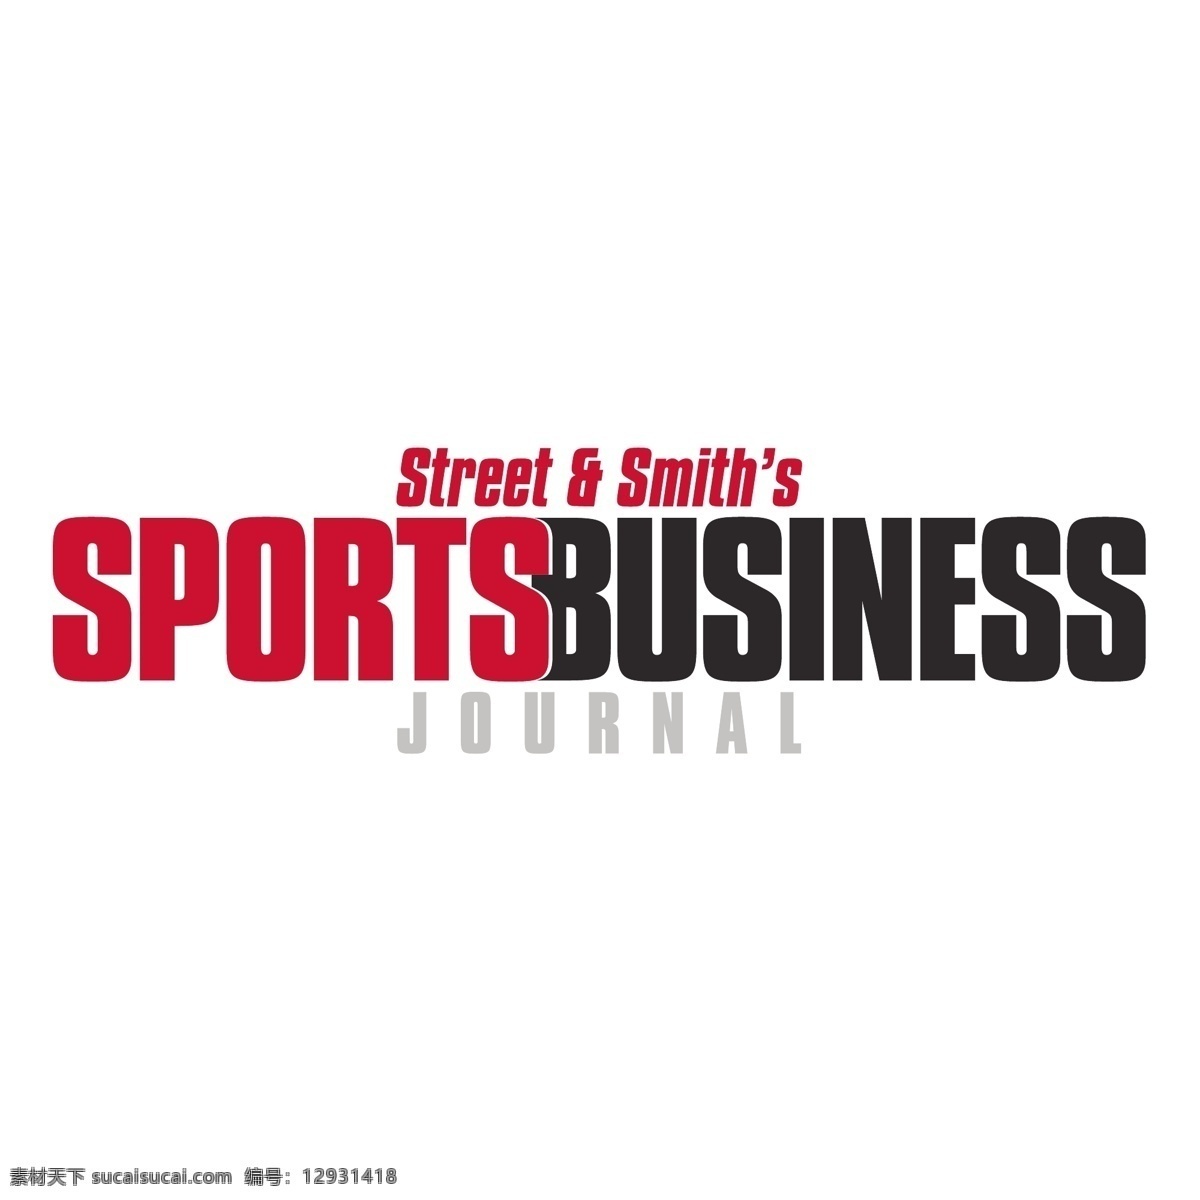 sportsbusiness 杂志 期刊 杂志自由载体 免费的杂志 免费 矢量 期刊杂志 图像 设计杂志 白色